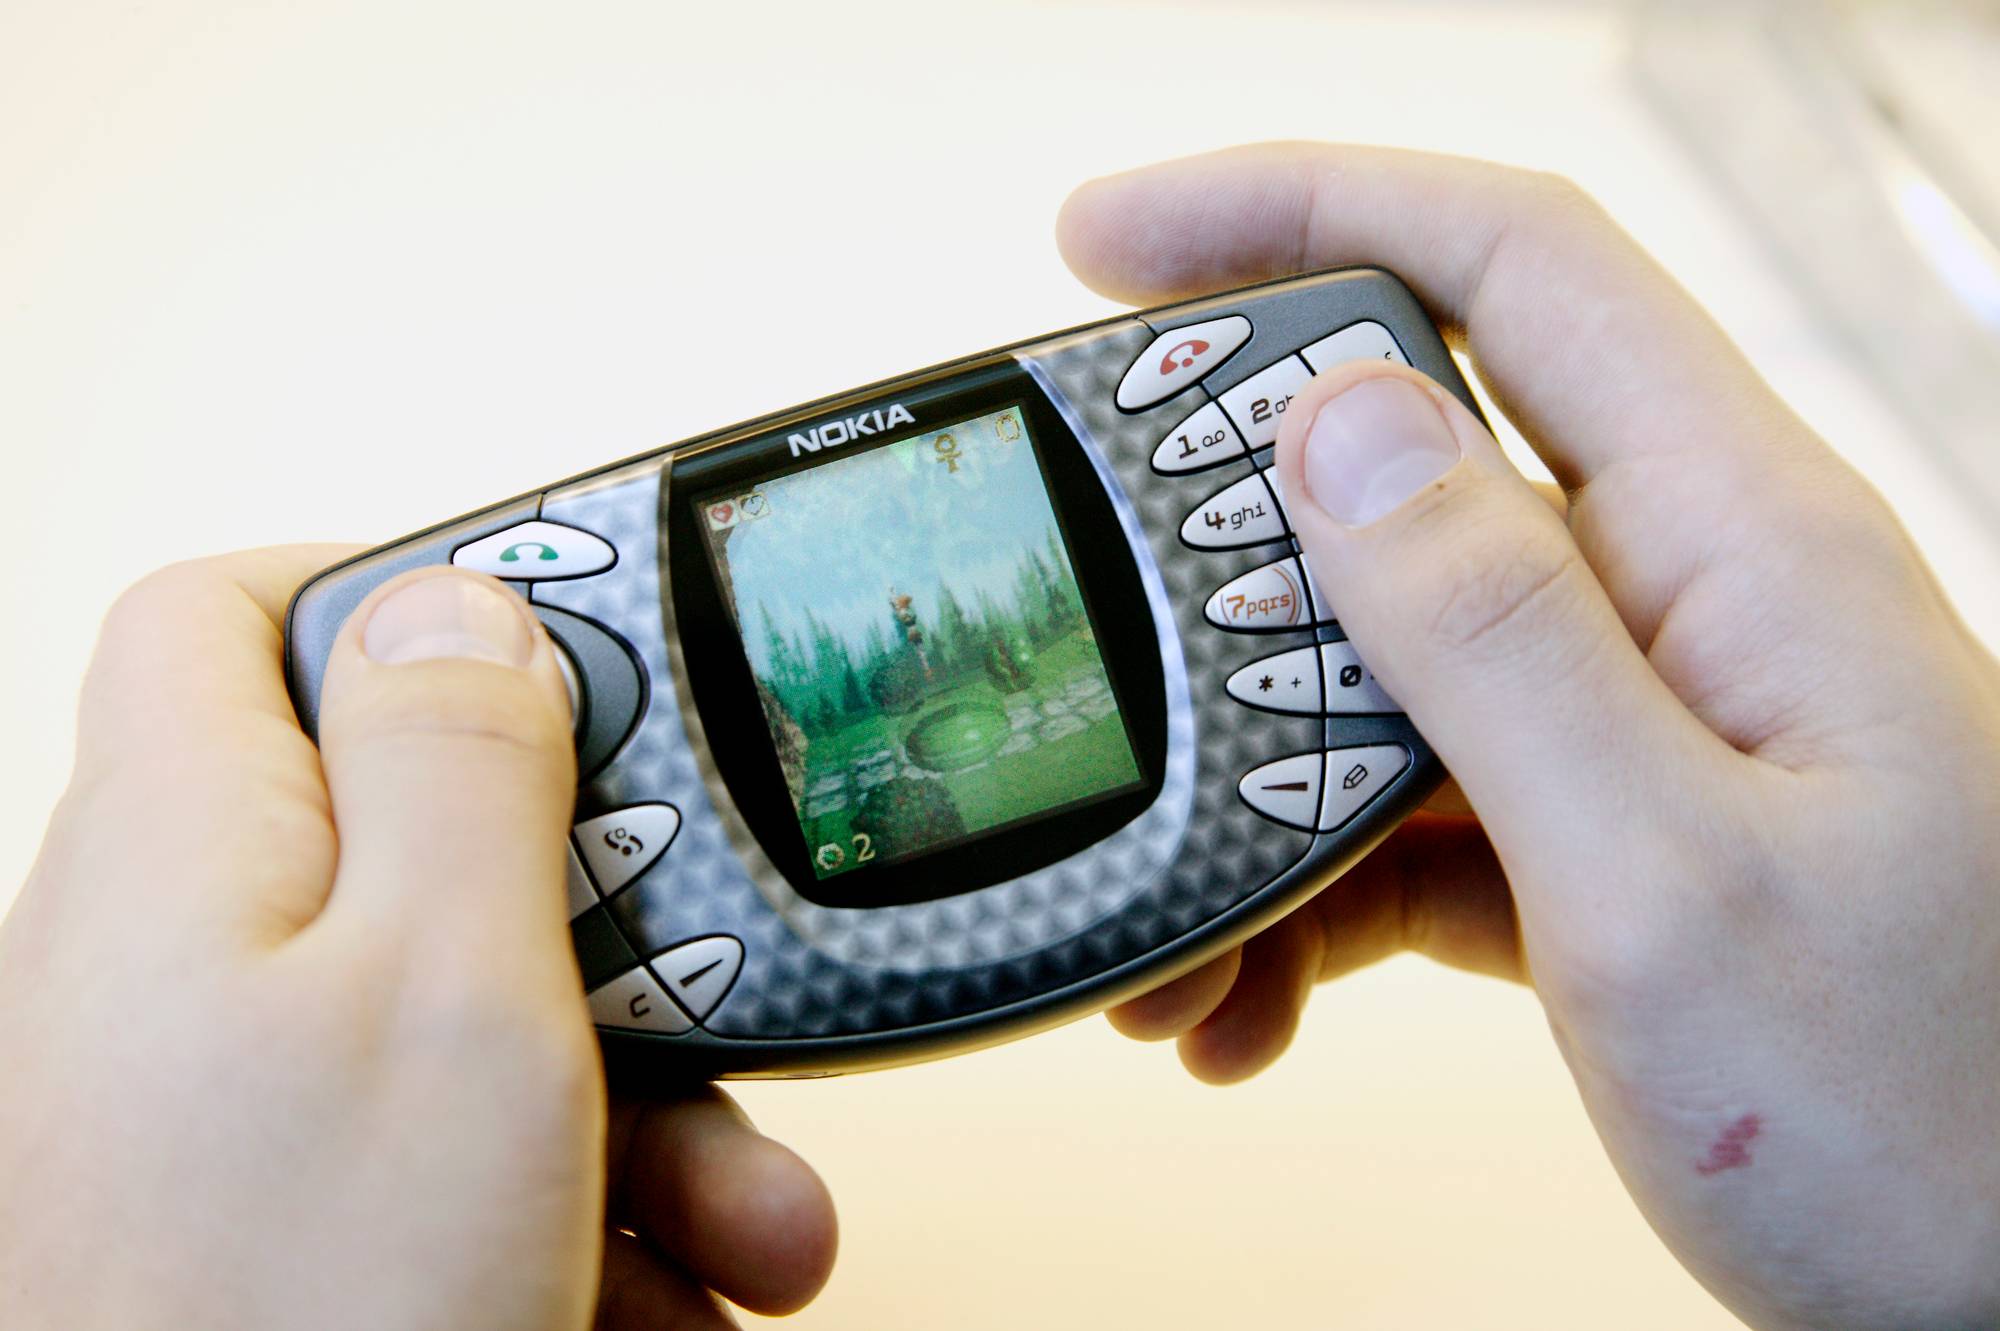 Mobiilipelien pioneeri Nokia hävisi pelin Applelle